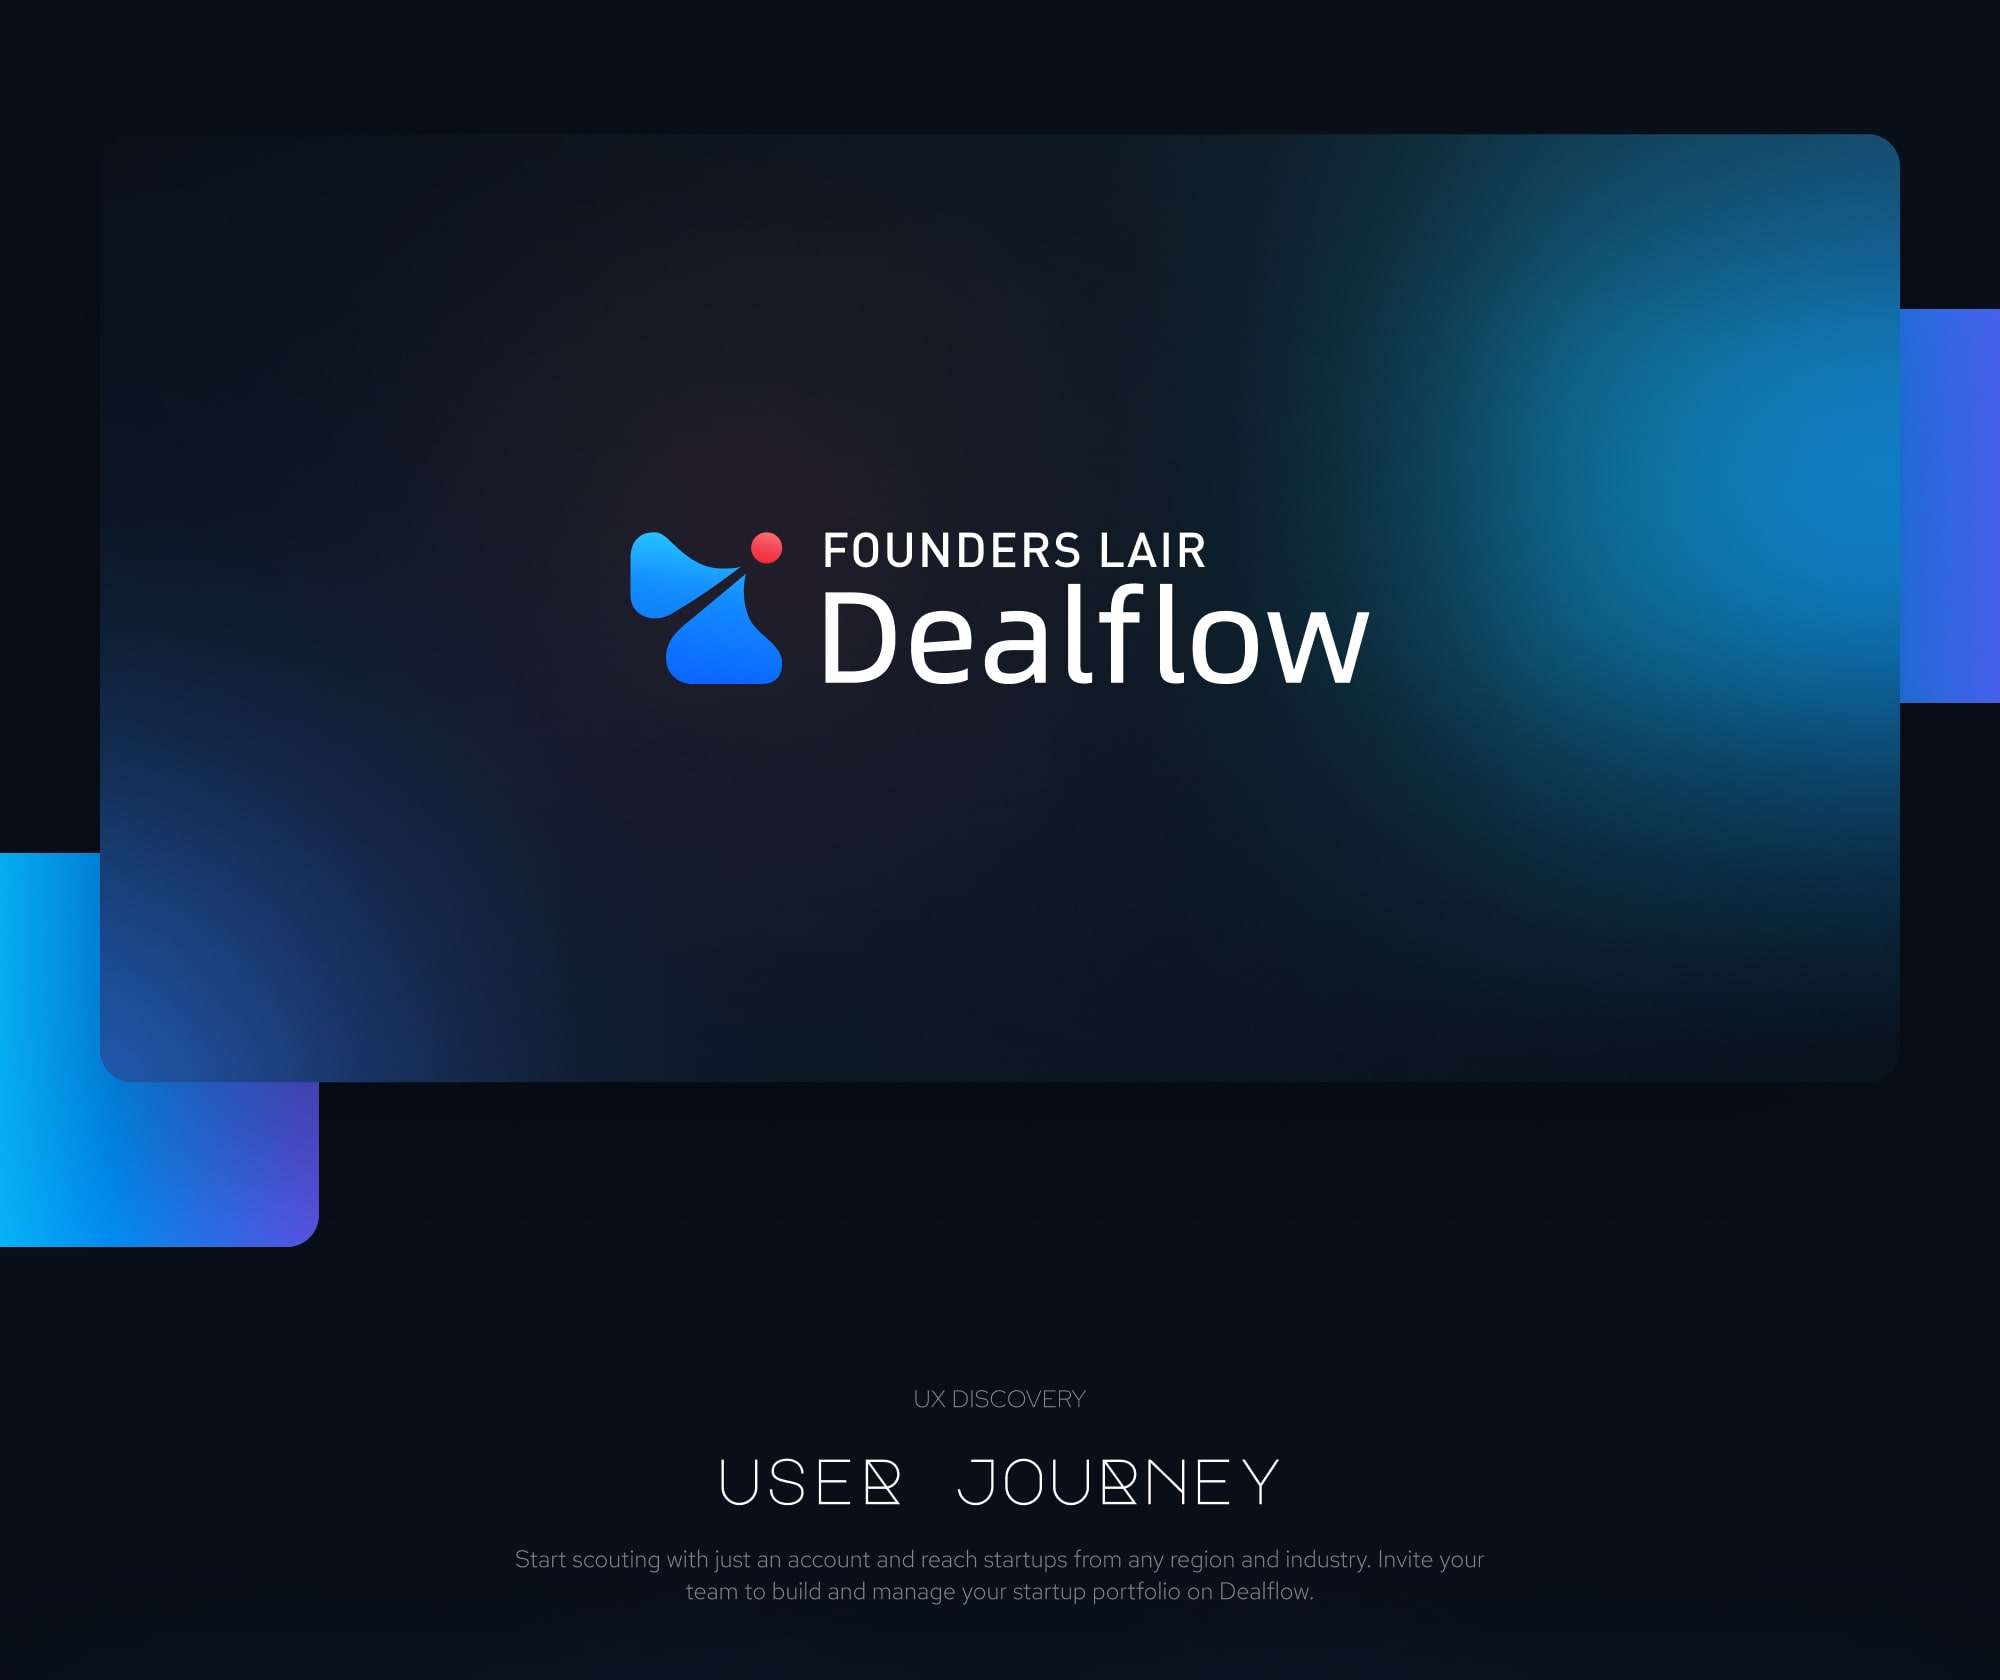 Dealflow slide